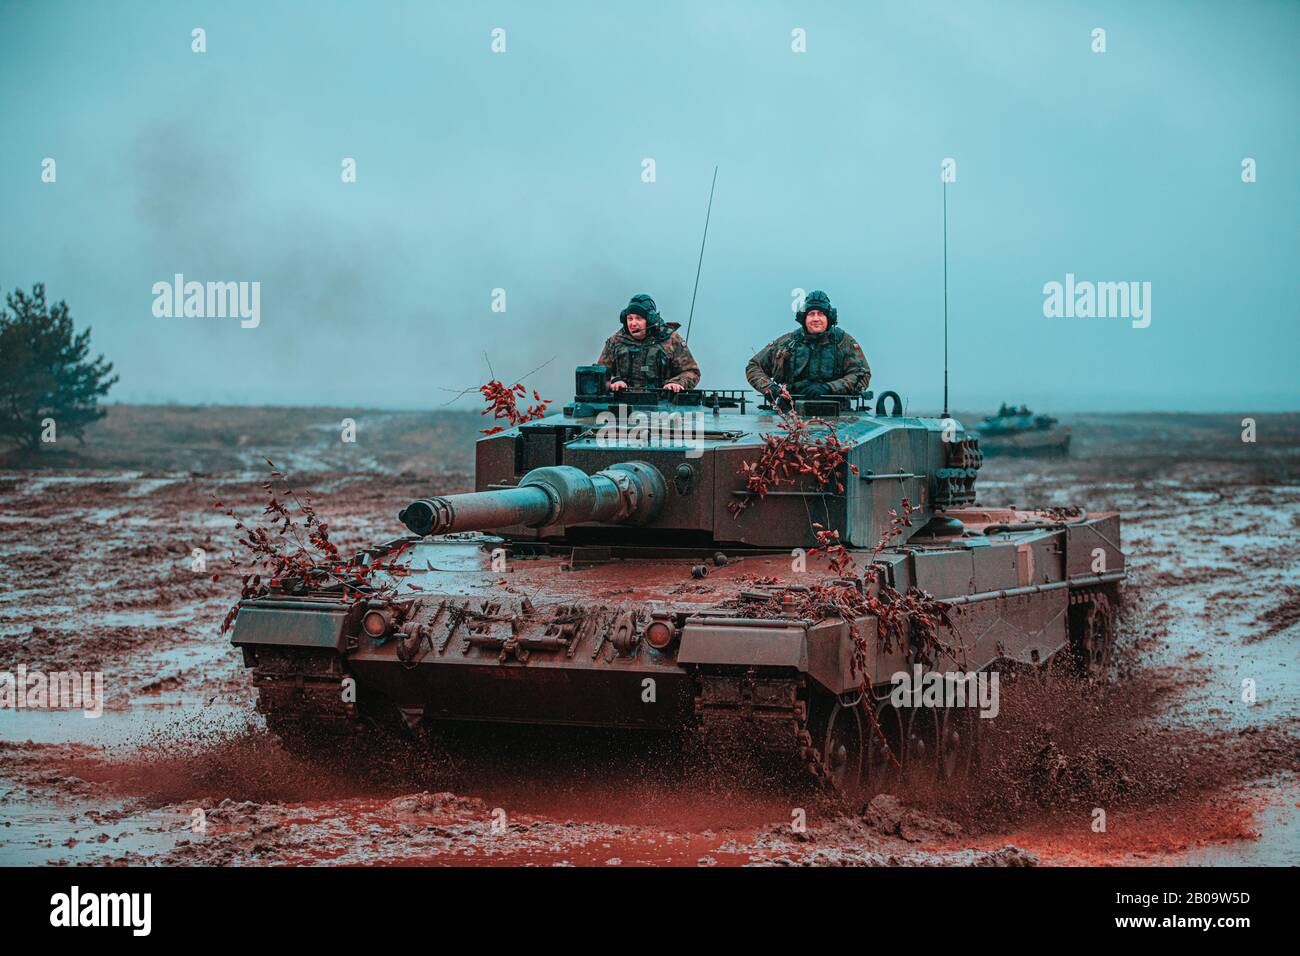 Polnische Soldaten, die der 1. Warschauer Brigade zugeteilt wurden, betreiben während eines multinationalen Trainingsszenarios einen Leopard 2-Panzer zur Unterstützung der NATO Enhanced Forward Presence Battle Group Poland 6. Februar 2020 in Bemowo Piskie, Polen. Die erweiterte Präsenz der NATO Besteht aus vier Battle-Groups, die auf beständiger Rotationsbasis nach Estland, Lettland, Litauen und Polen eingesetzt werden. Stockfoto